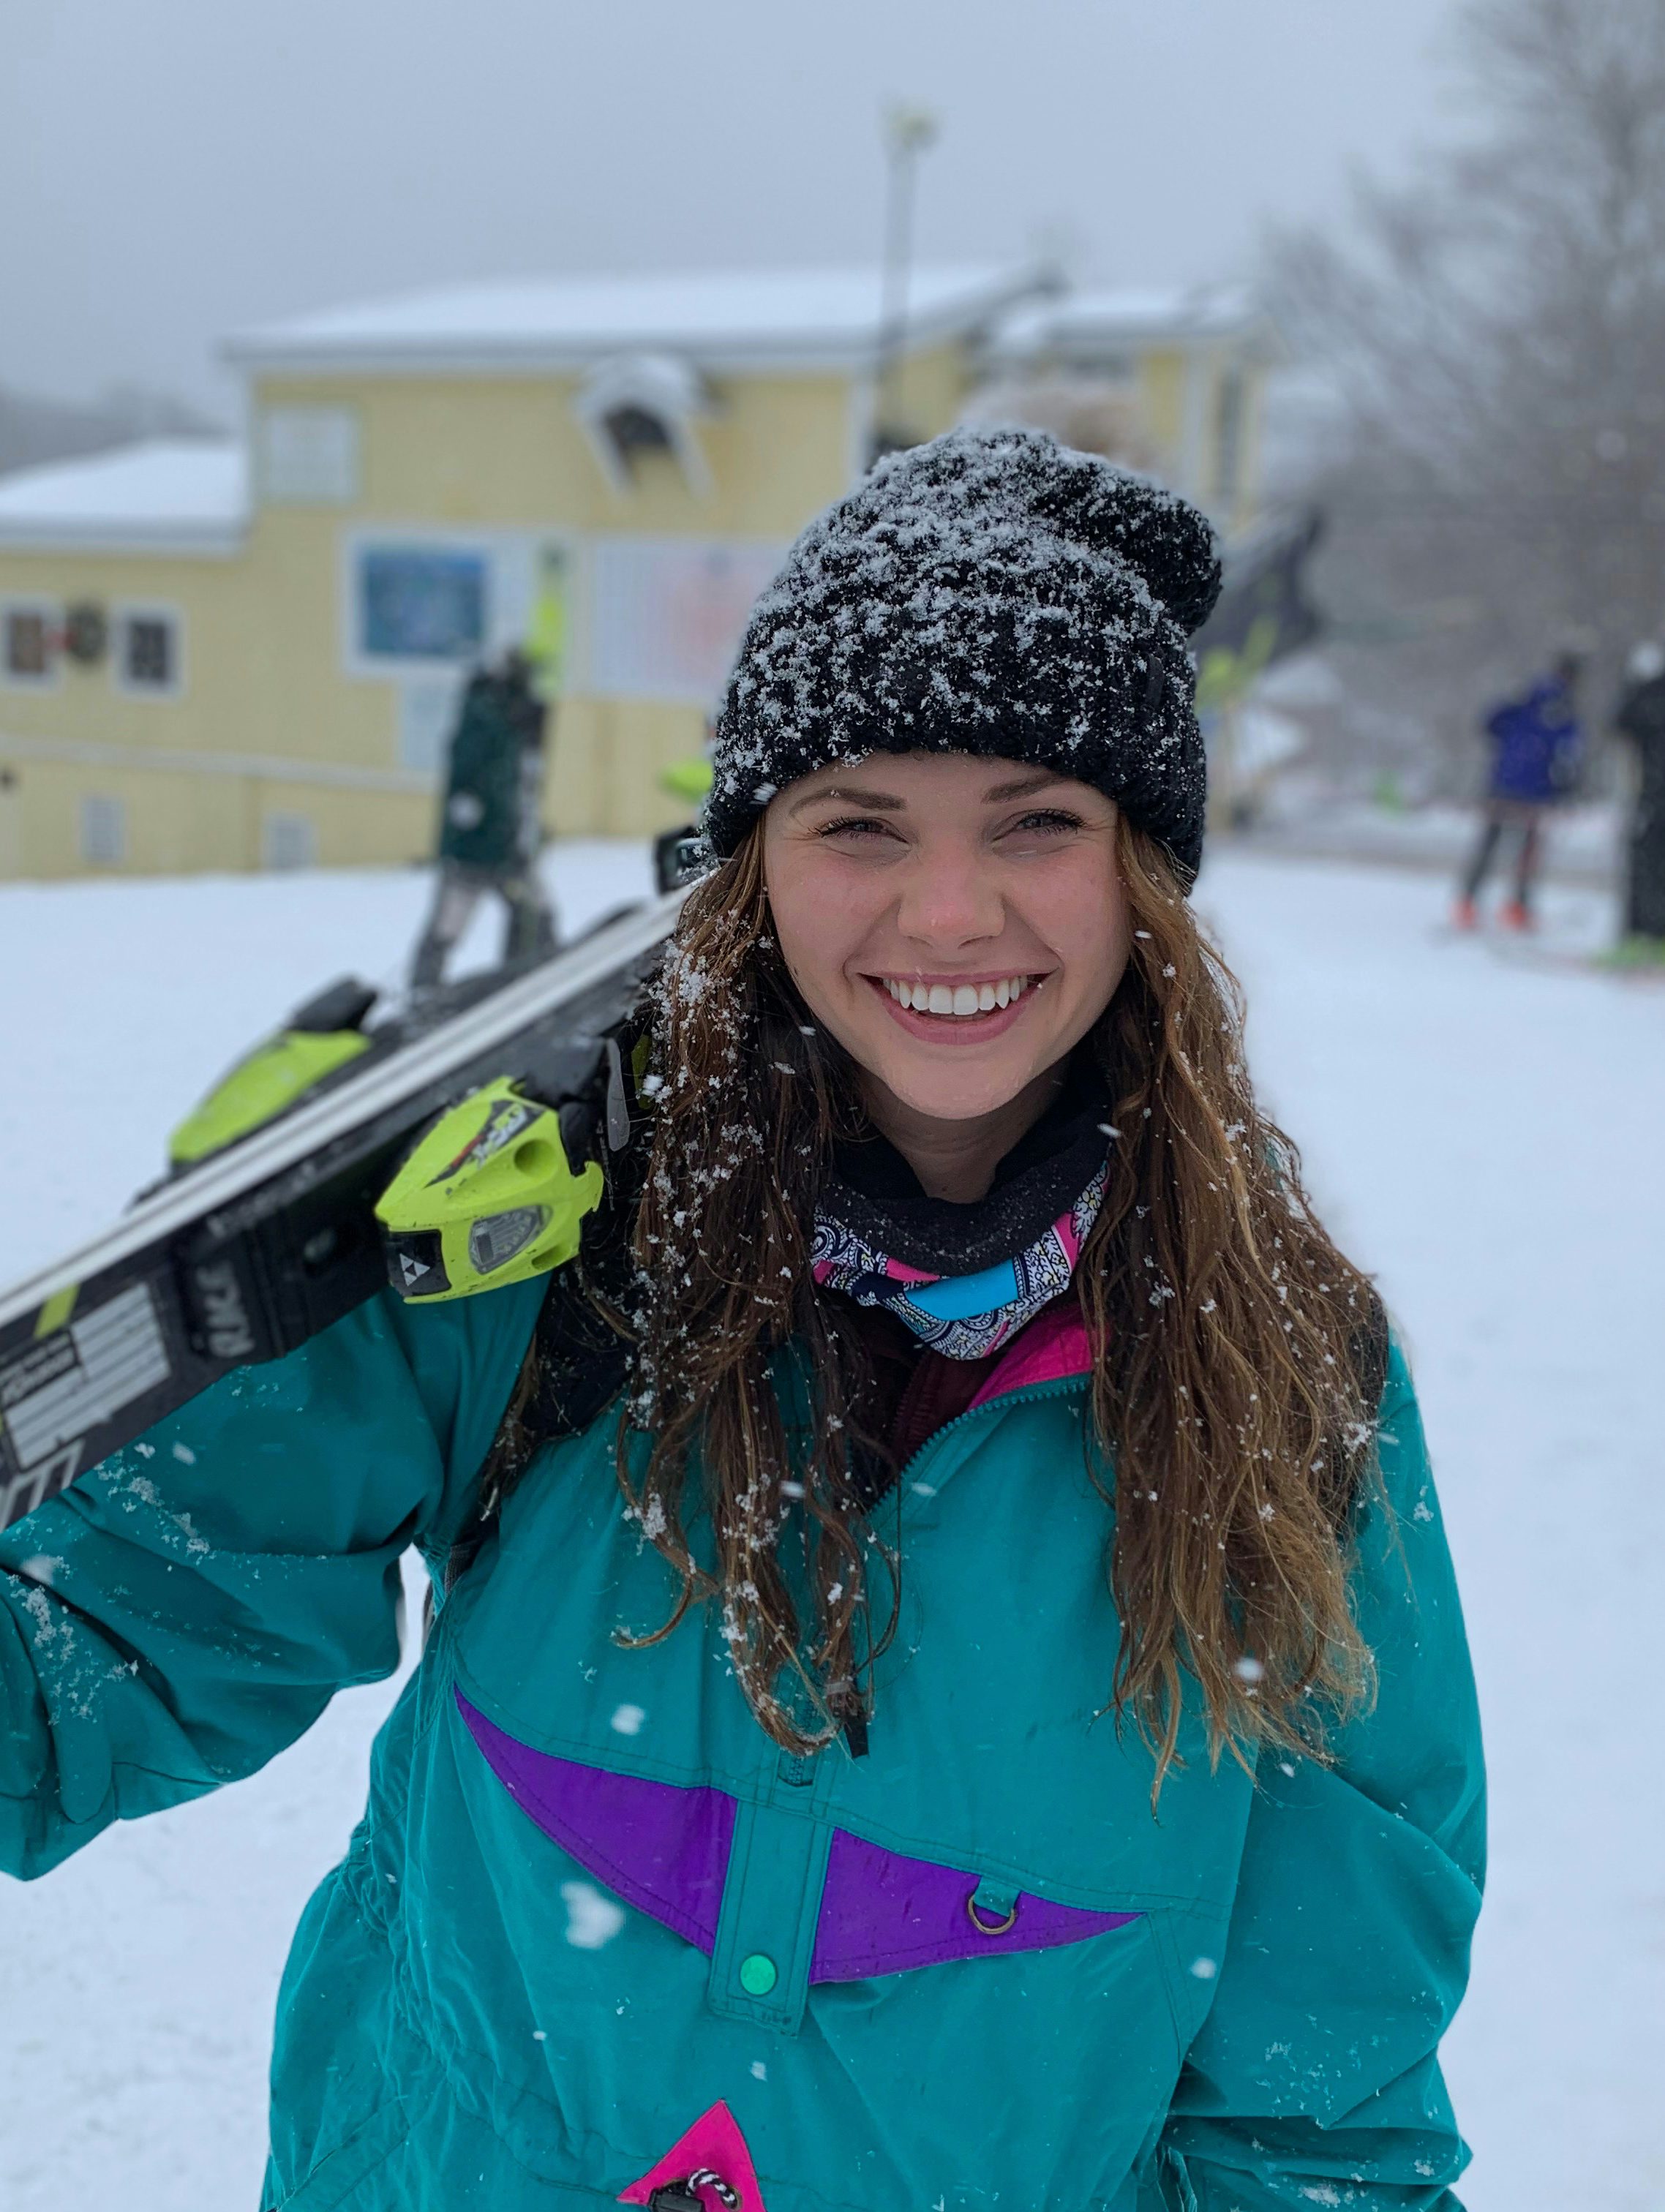 Ski Expert Charlotte H